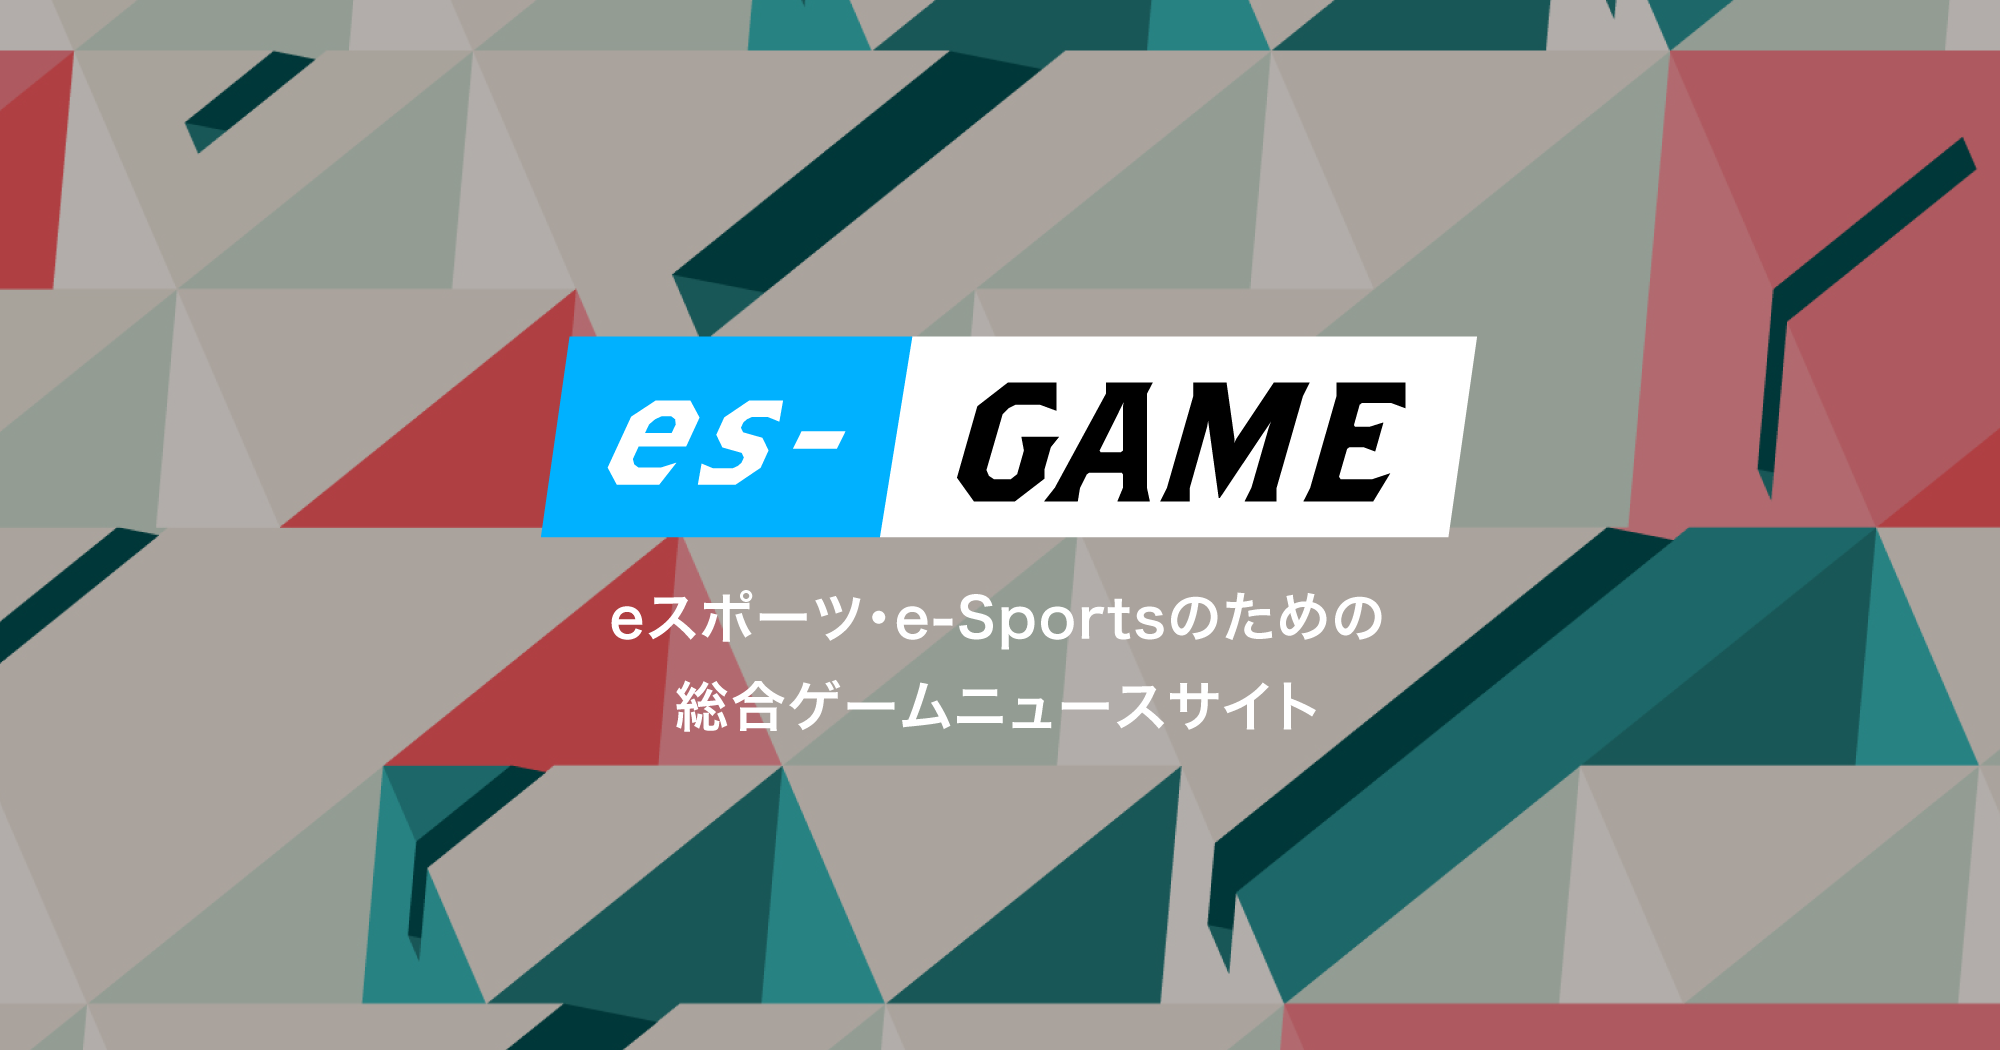 e-SportsのすべてがわかるWEBメディア「es-GAME」をスタート。VTuberアナウンサー「大蔦エル」が公式キャラクターに就任!